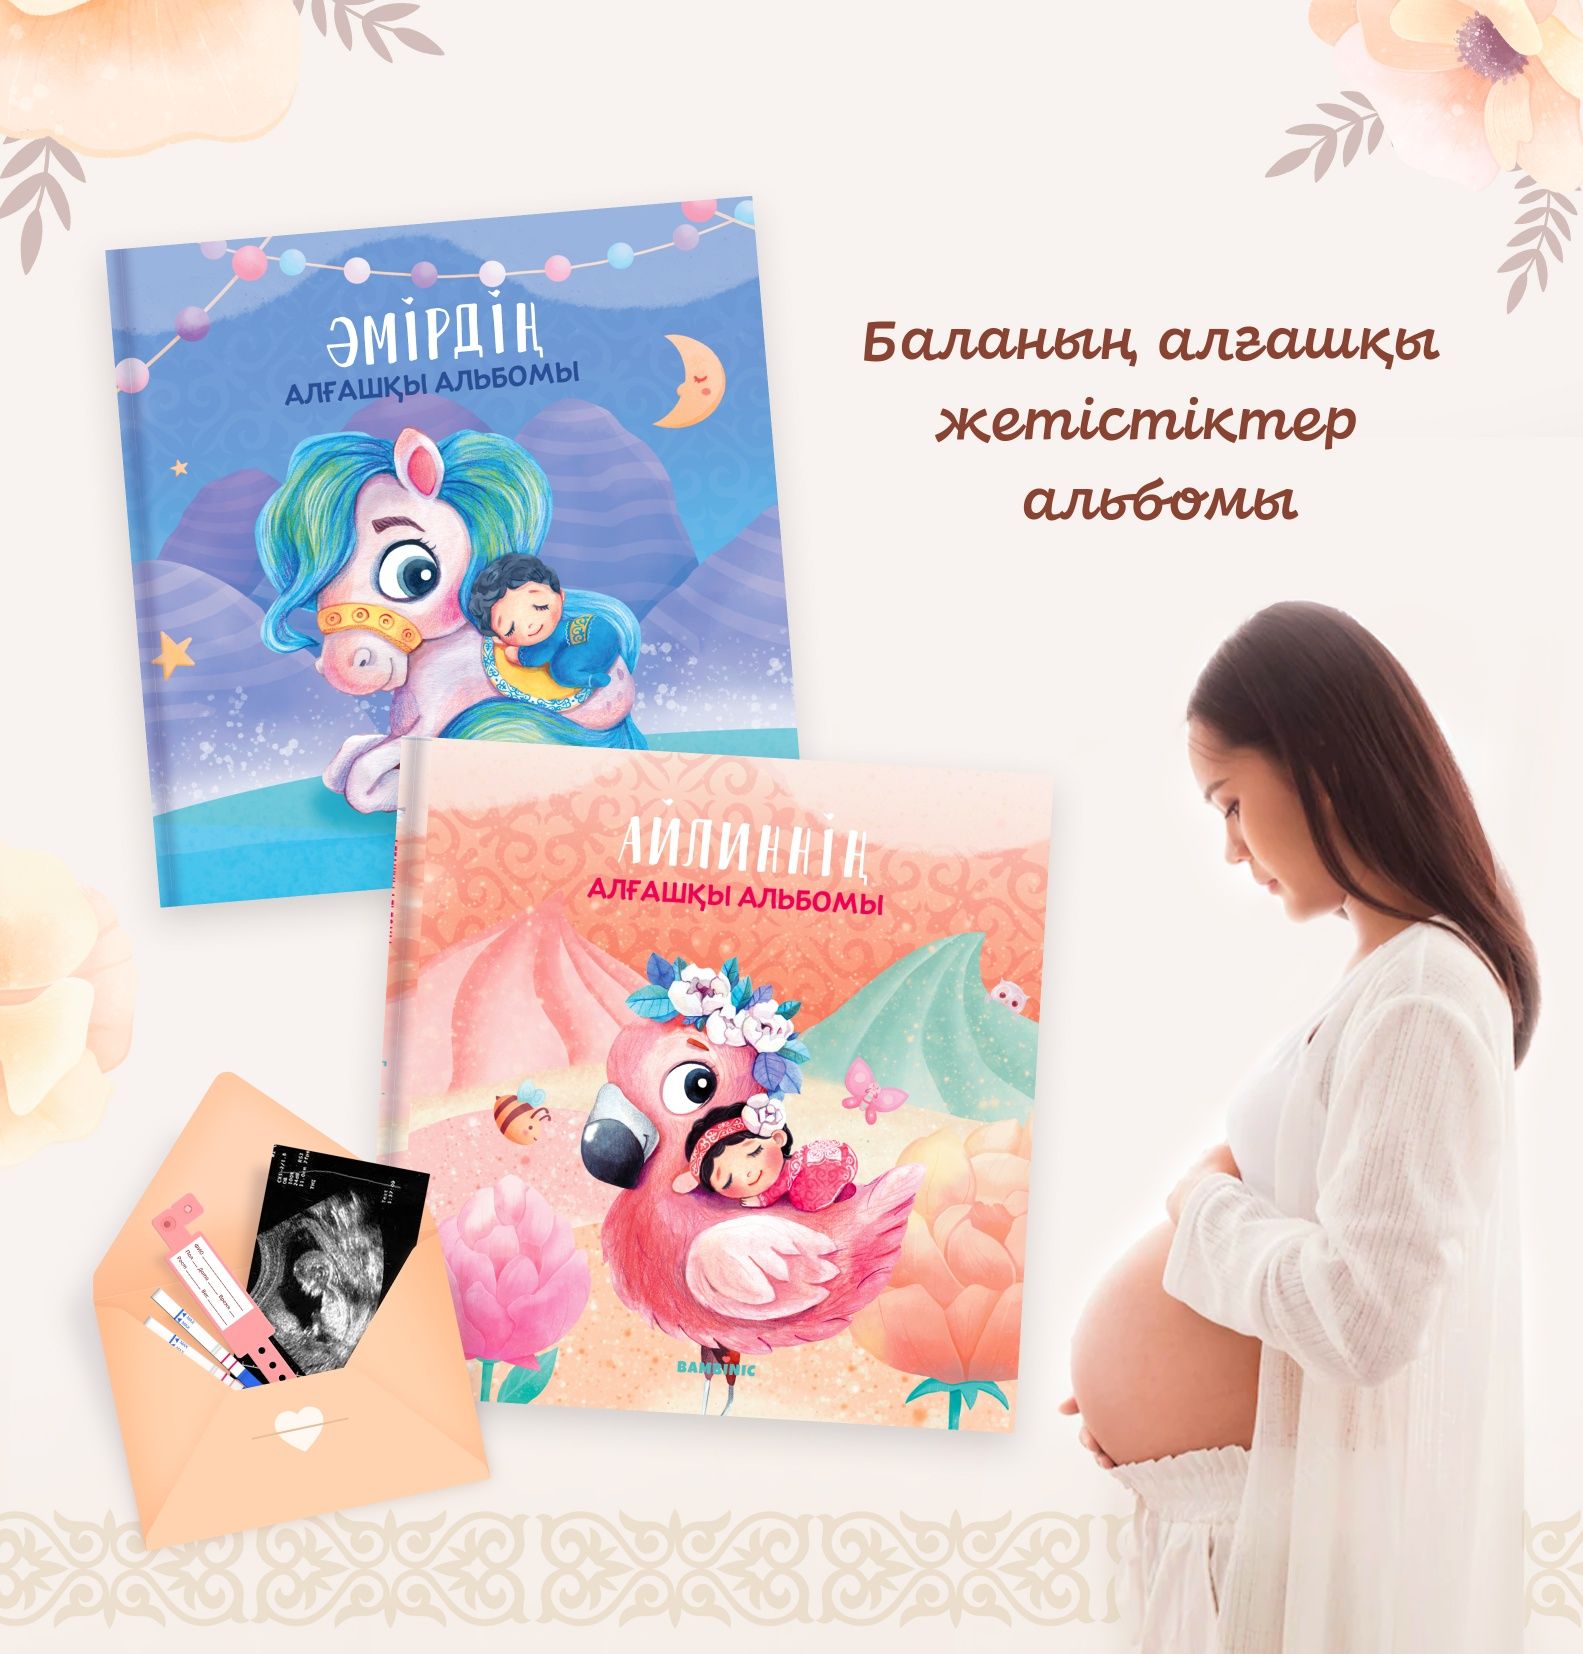 Именной Первый альбом малыша на казахском языке 0-2г